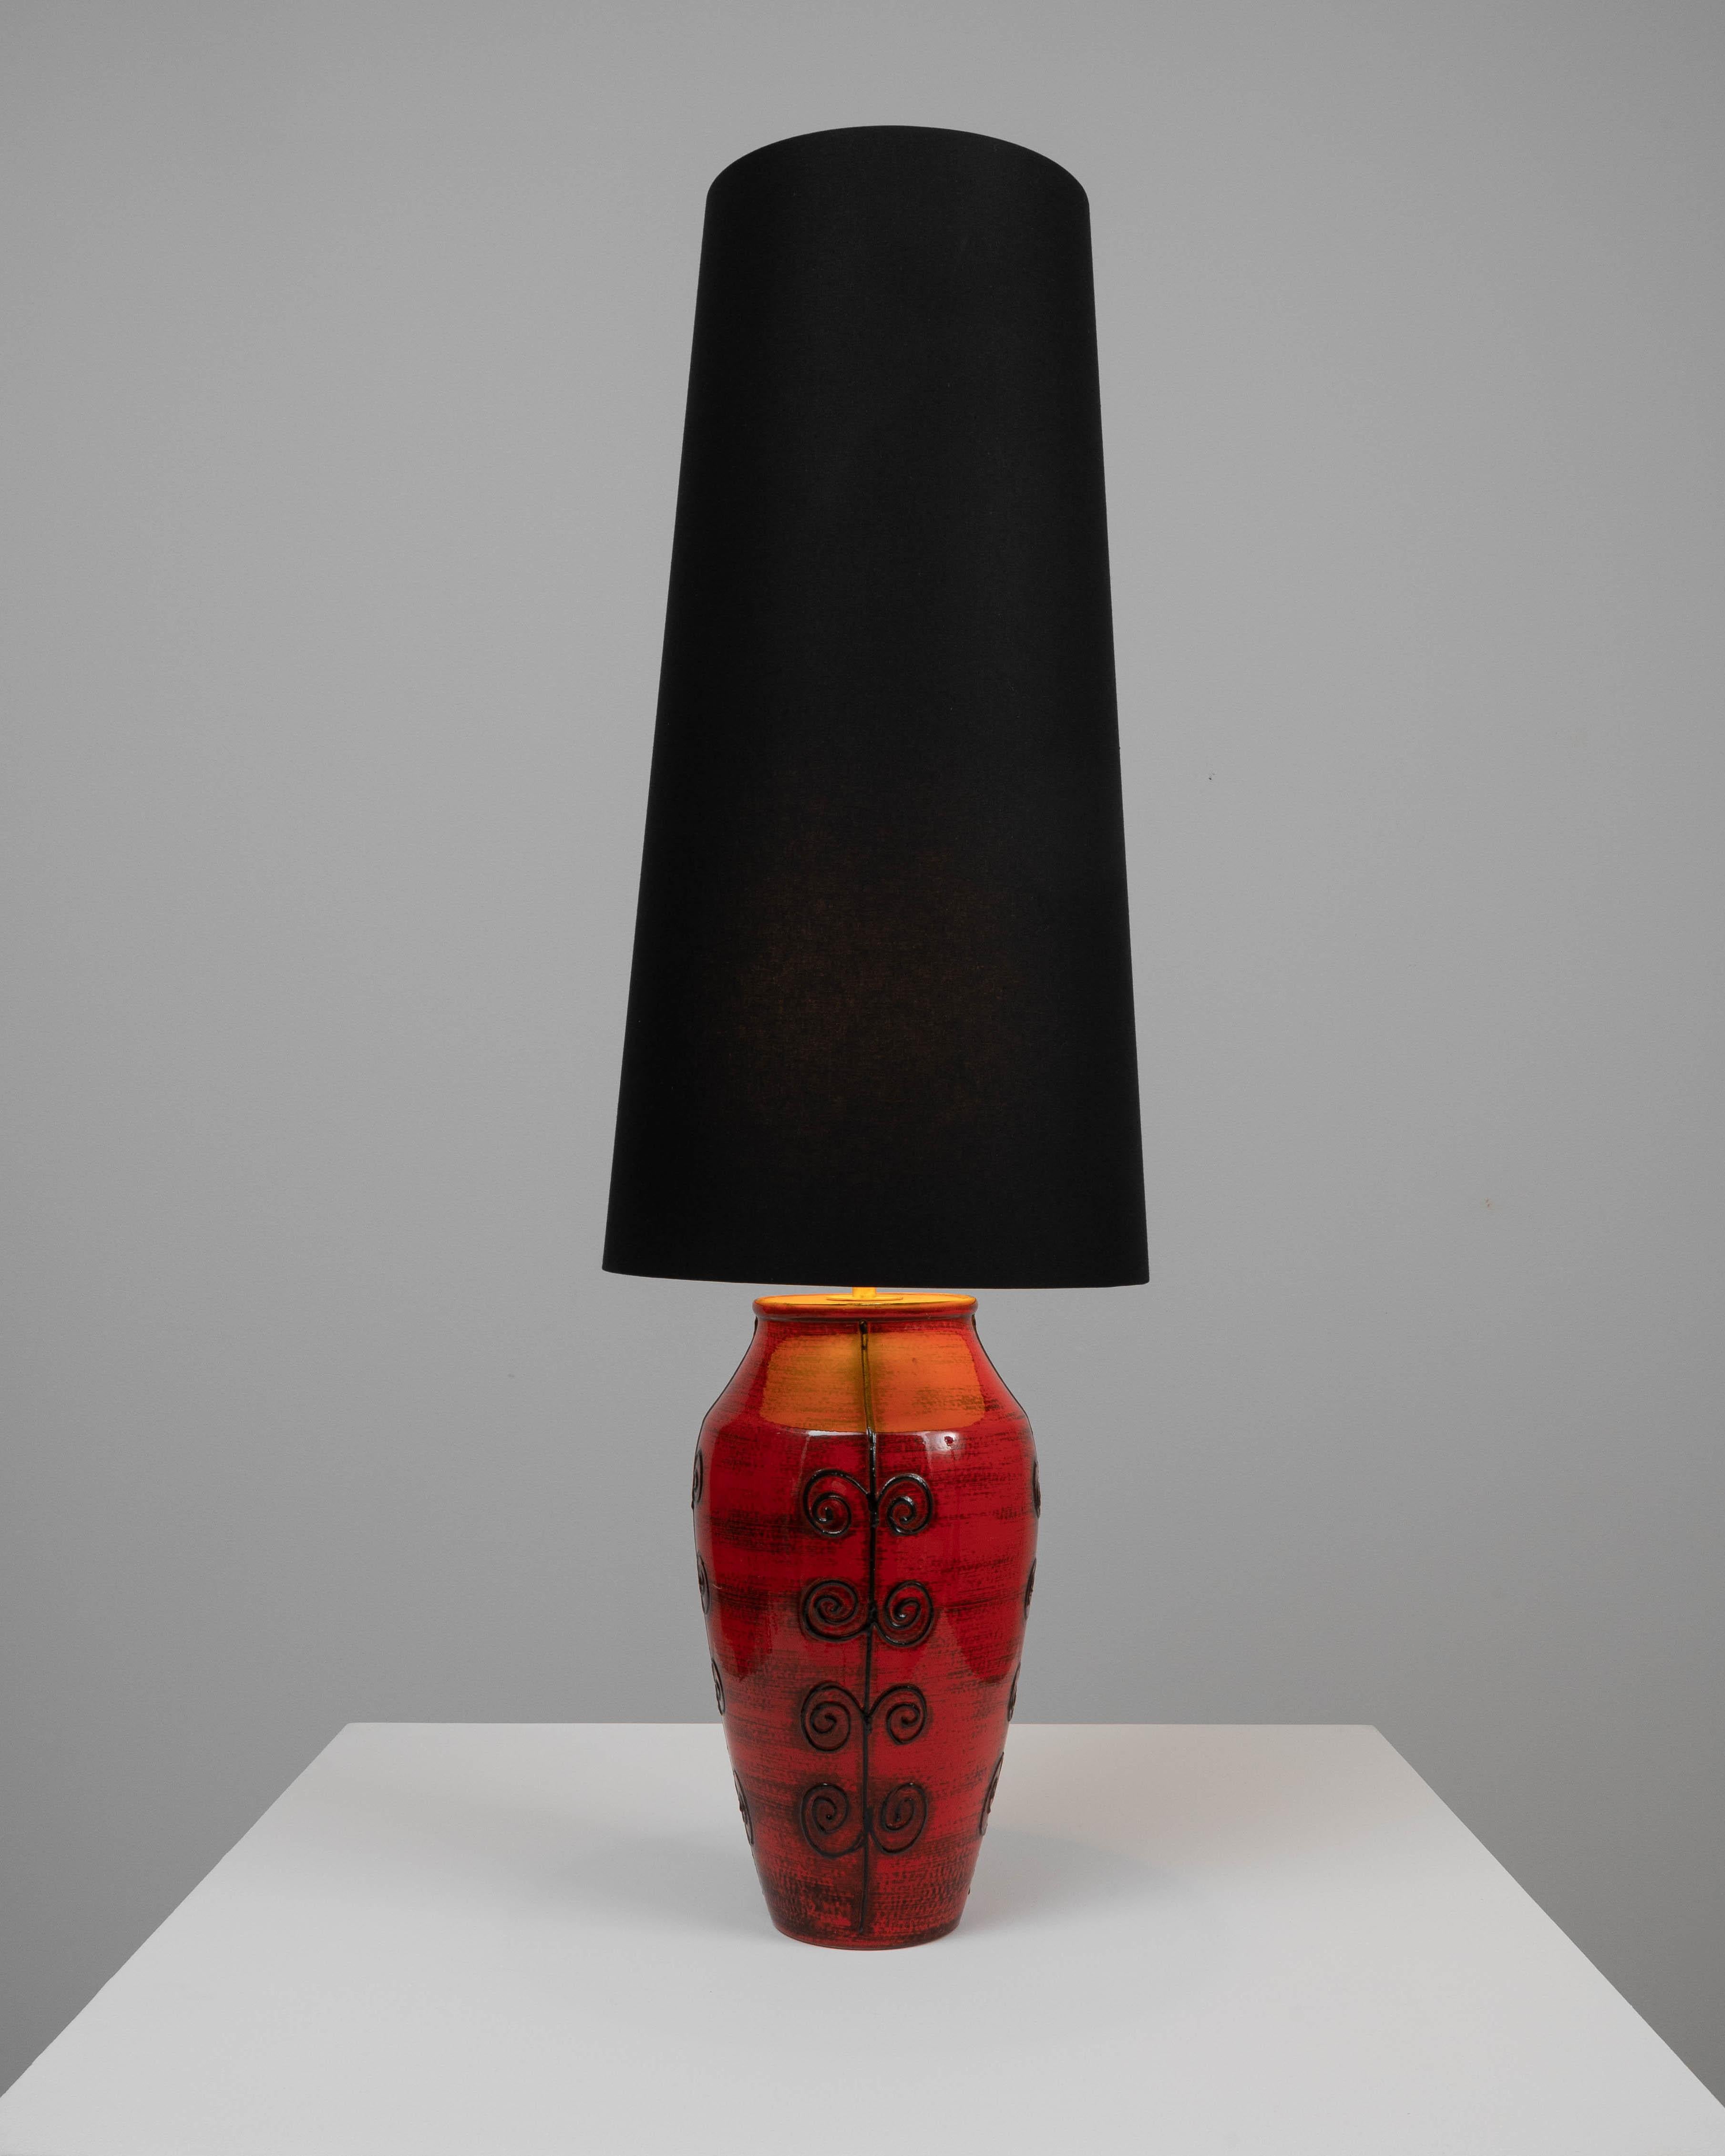 Cette lampe de table en céramique allemande du 20e siècle est une pièce de choix. La base rouge audacieuse, avec sa finition brillante et ses accents noirs tourbillonnants, offre un contraste spectaculaire avec l'abat-jour noir élégant. Le design de